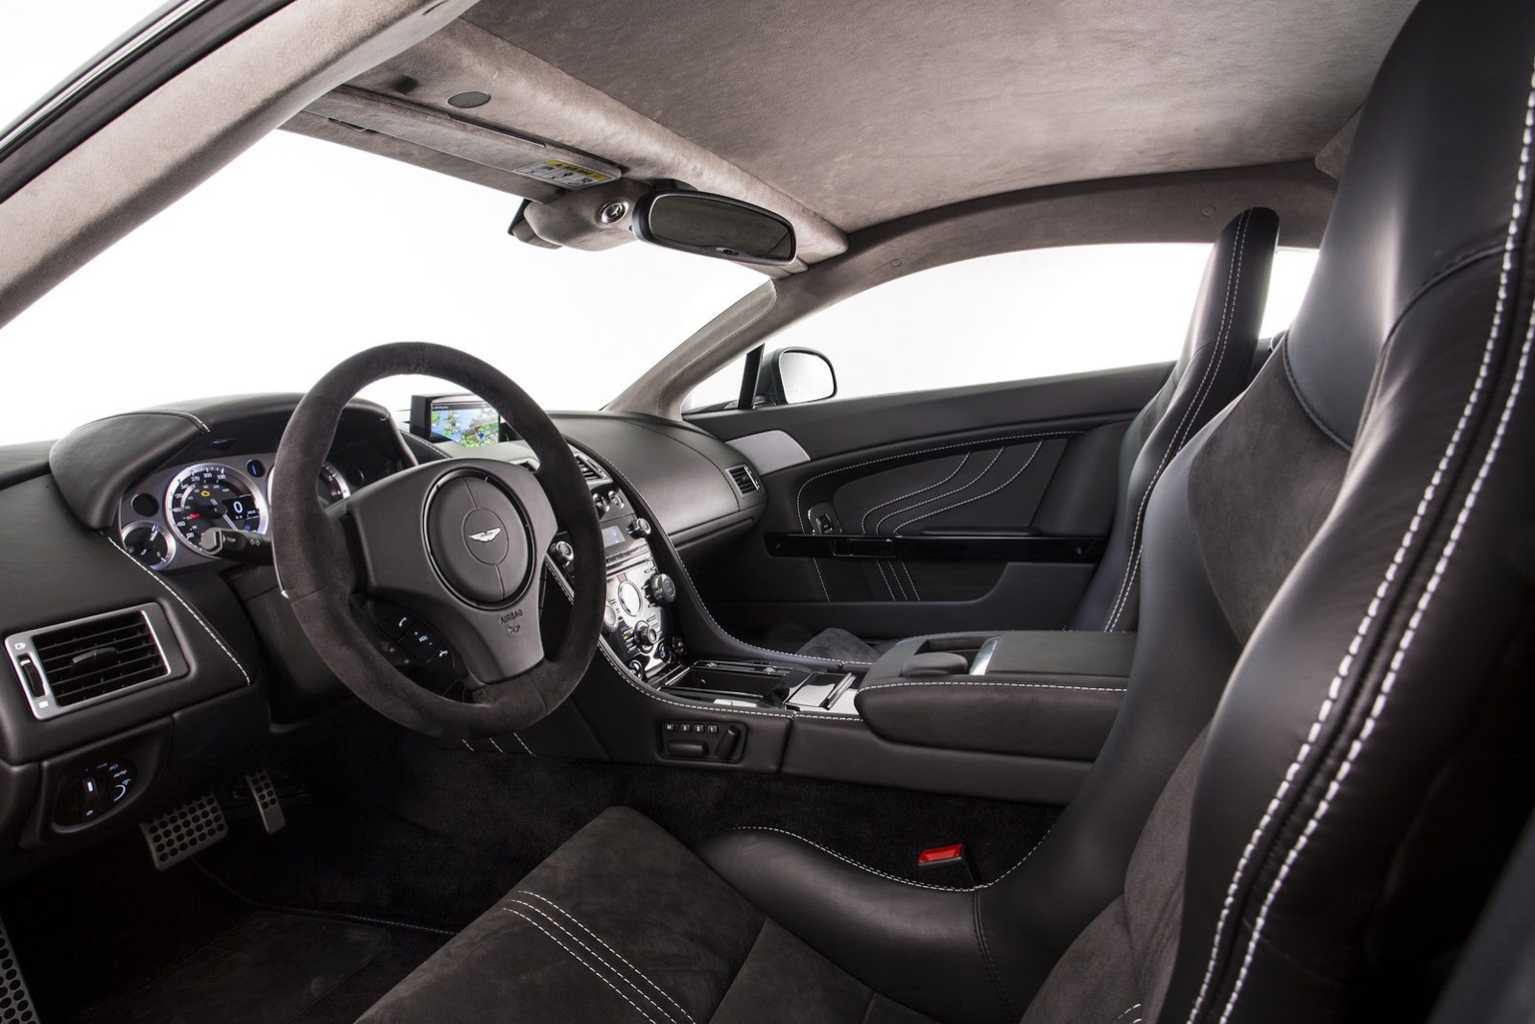 2013 Aston Martin Vantage Interior